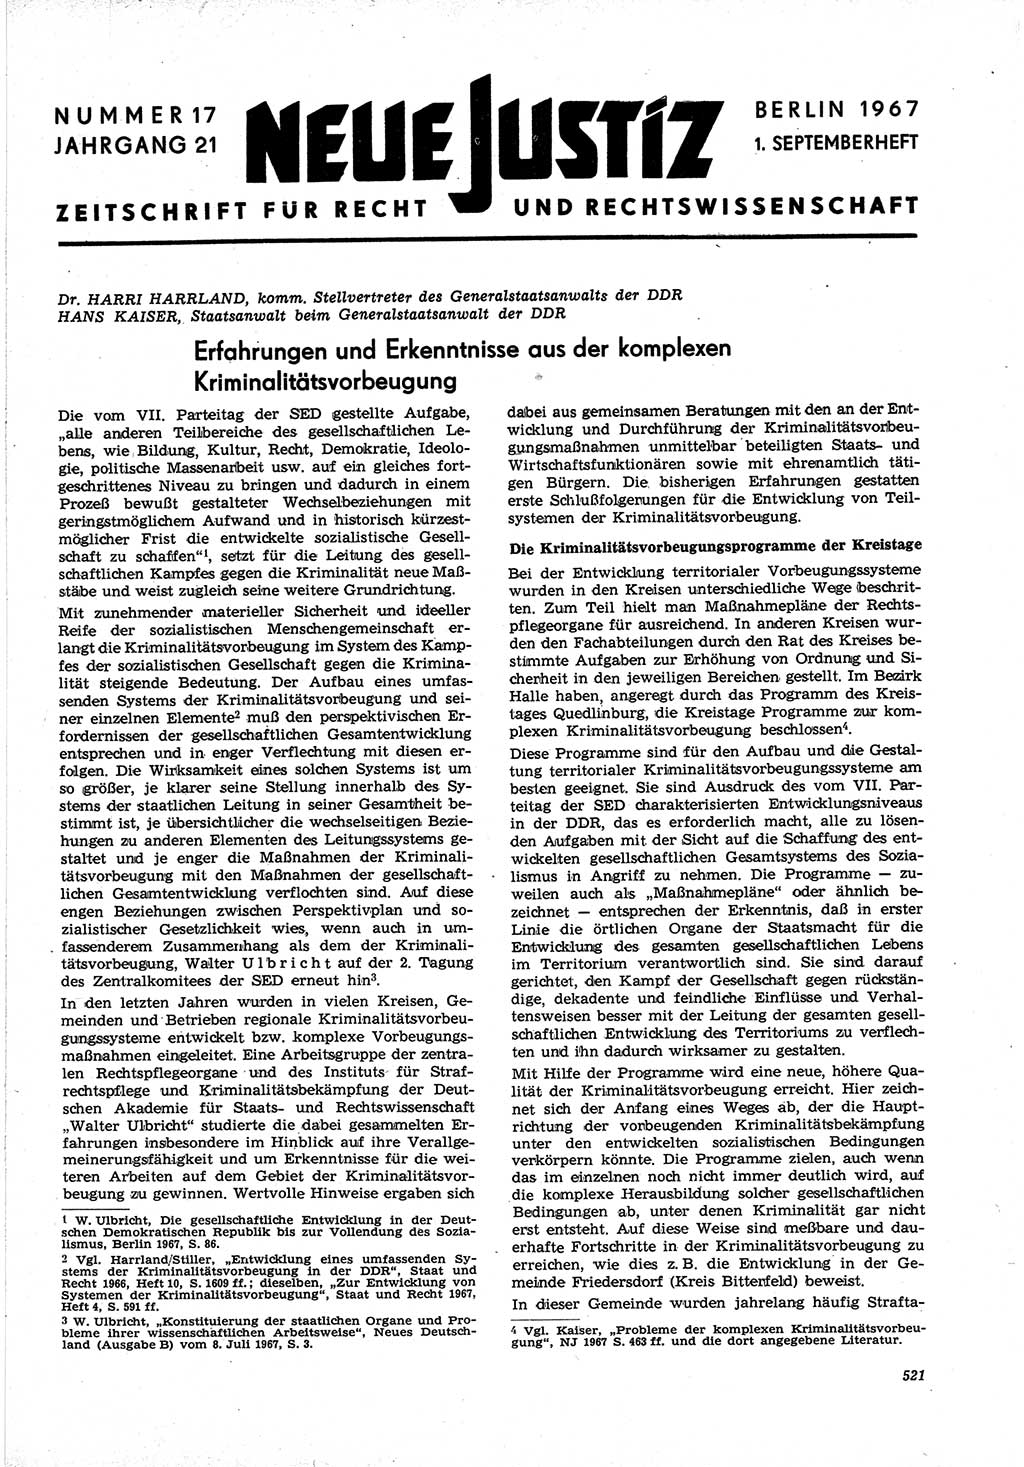 Neue Justiz (NJ), Zeitschrift für Recht und Rechtswissenschaft [Deutsche Demokratische Republik (DDR)], 21. Jahrgang 1967, Seite 521 (NJ DDR 1967, S. 521)